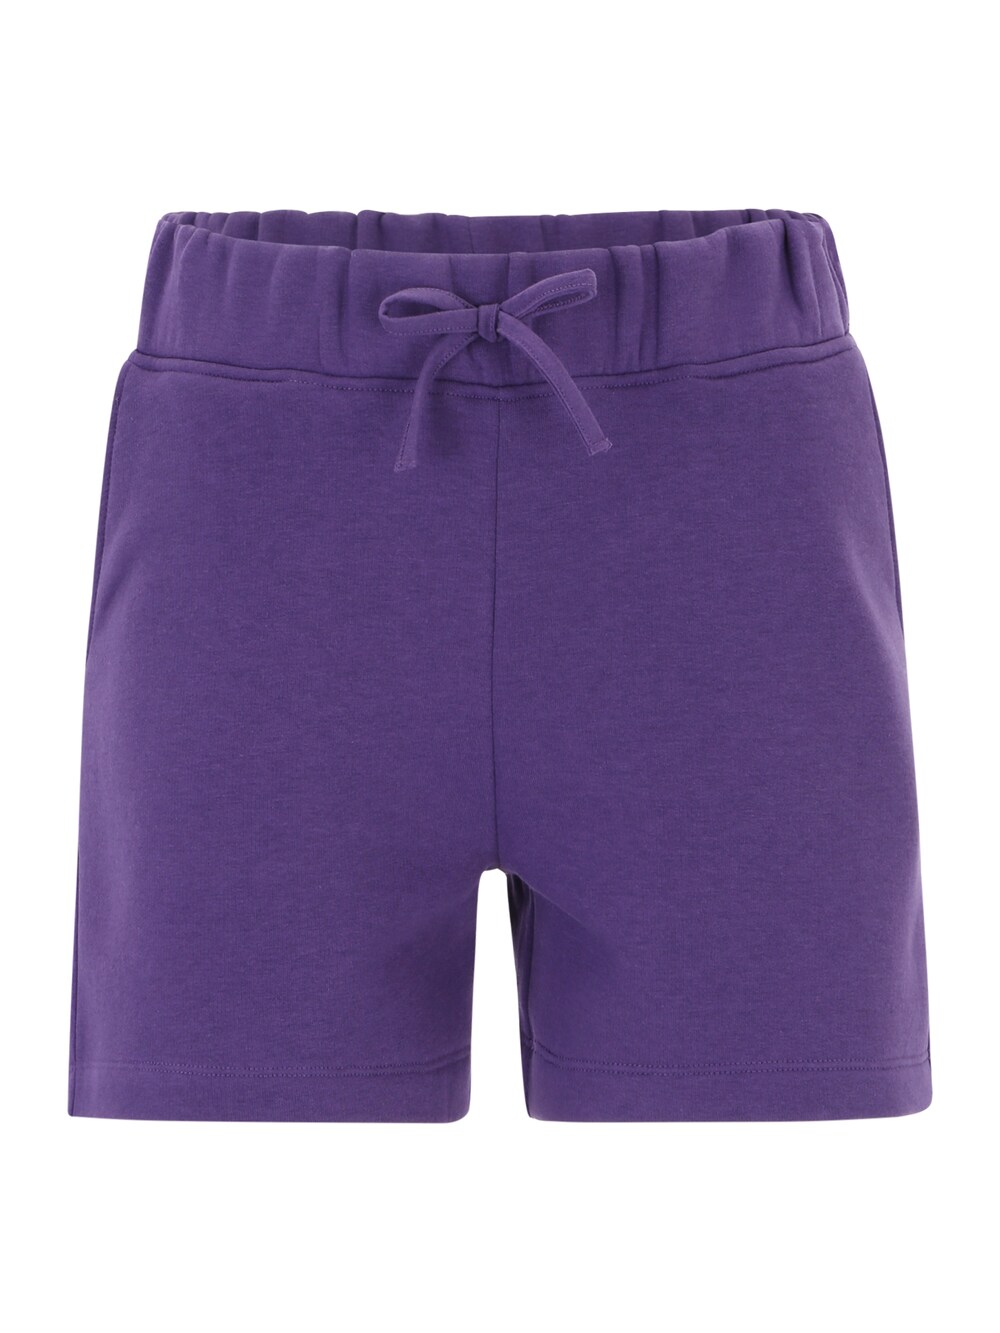 Обычные брюки AÉROPOSTALE, темно фиолетовый